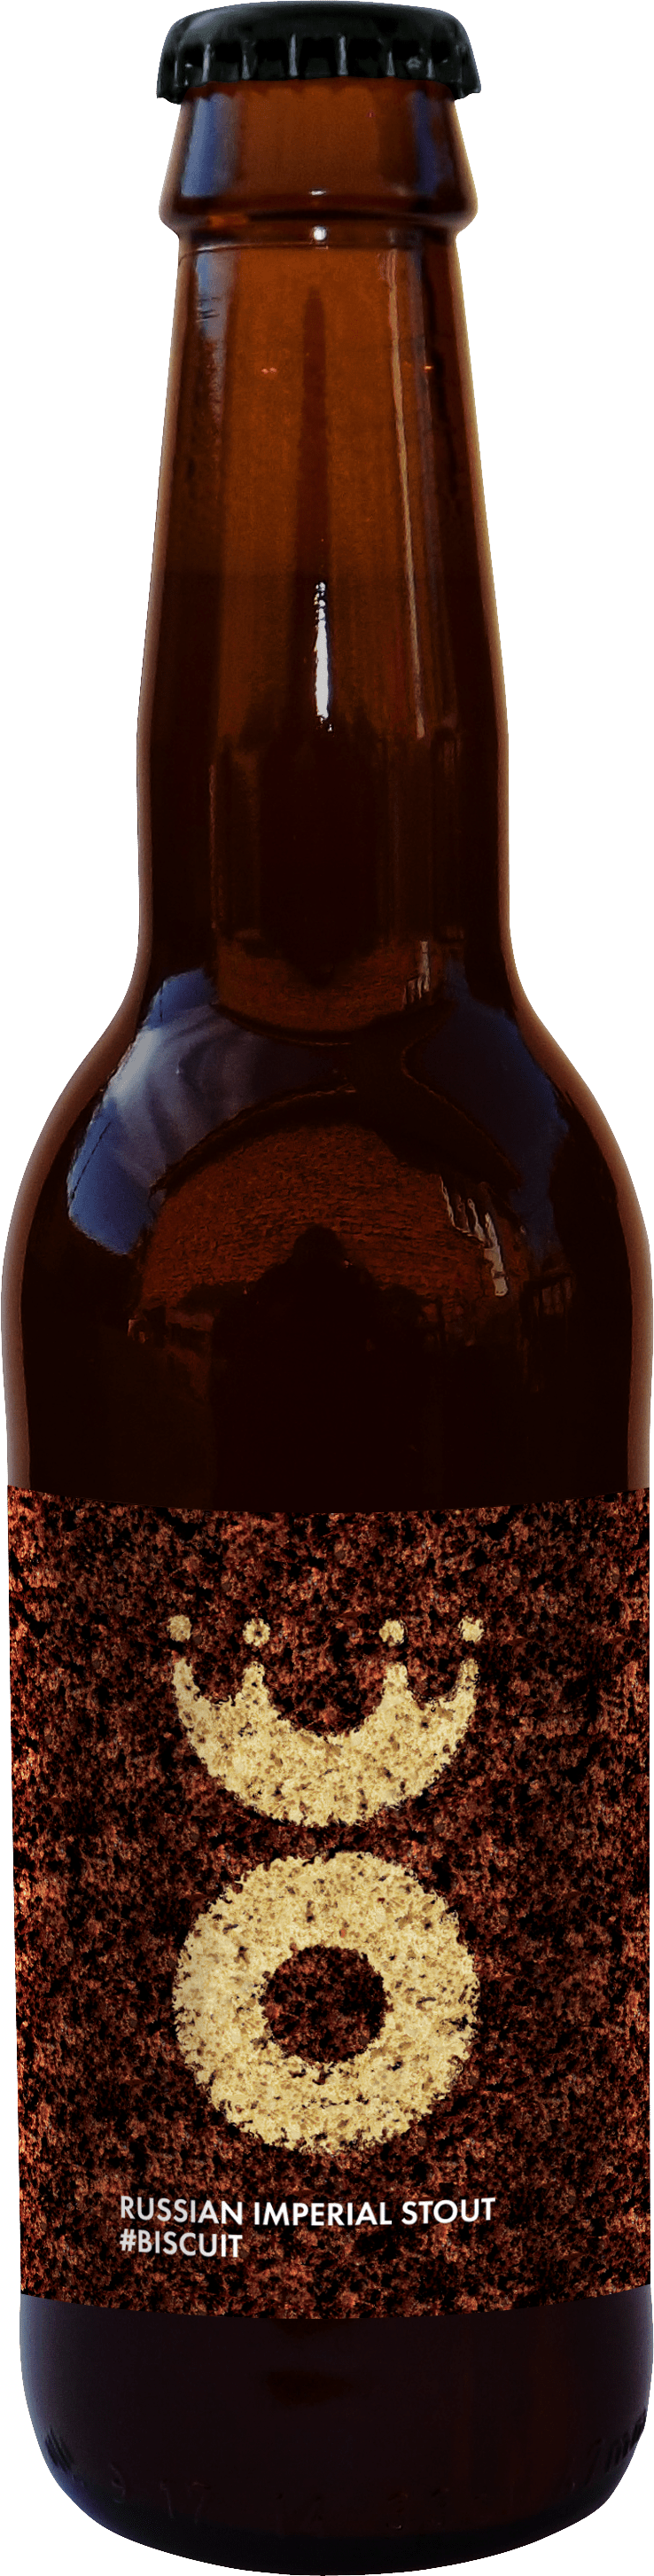 пиво steam brew imperial stout темное фото 45